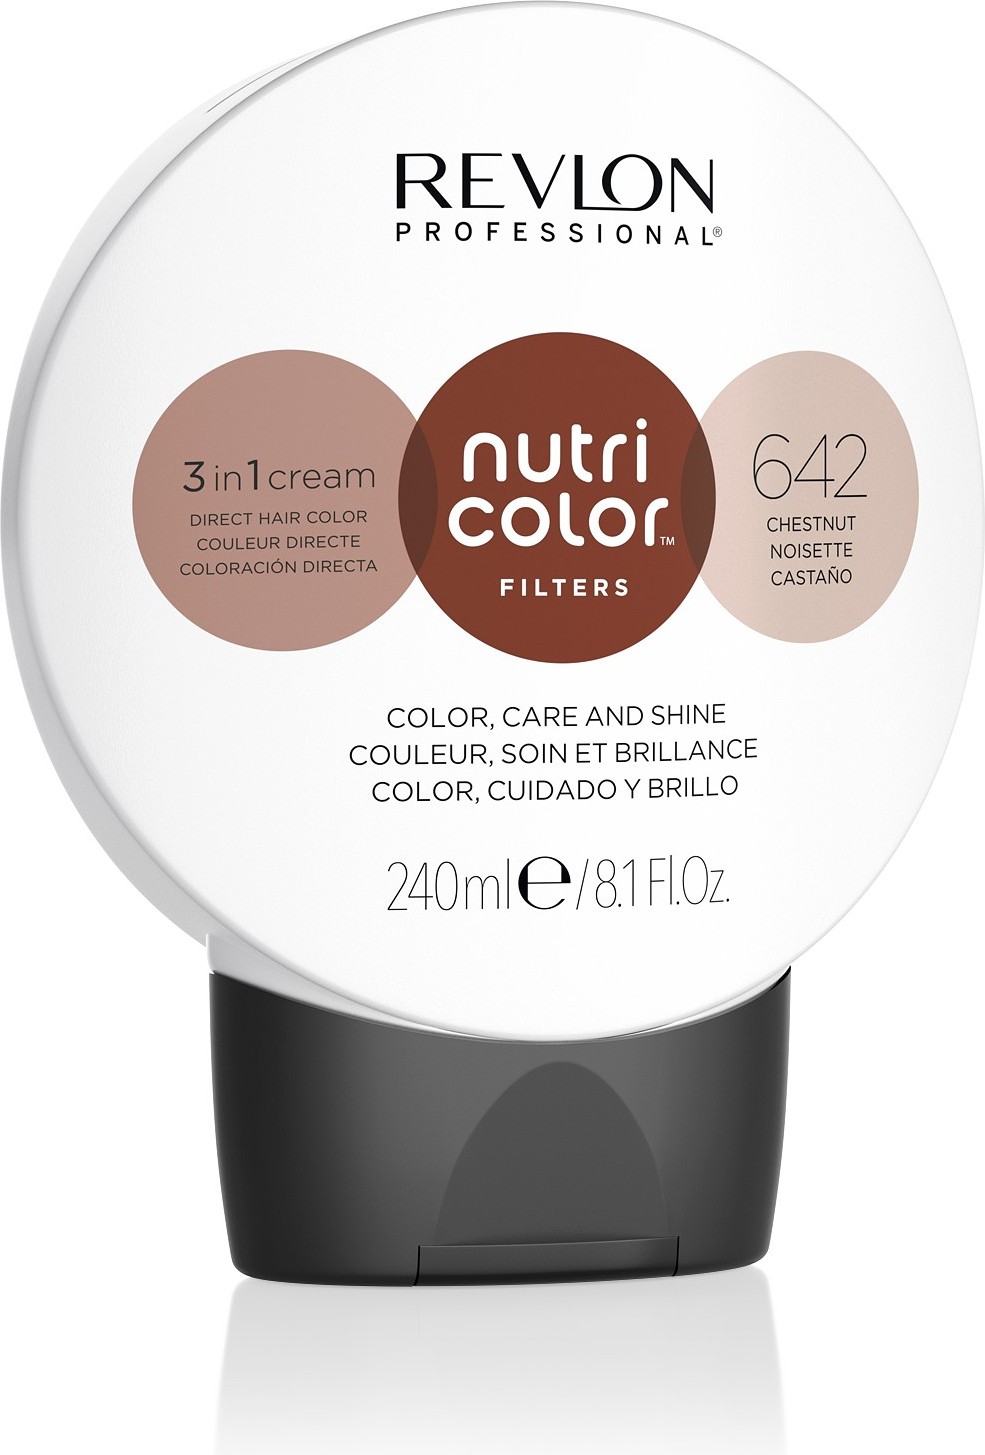  Revlon Professional Nutri Color Filters 642 Noisette 240 ml 